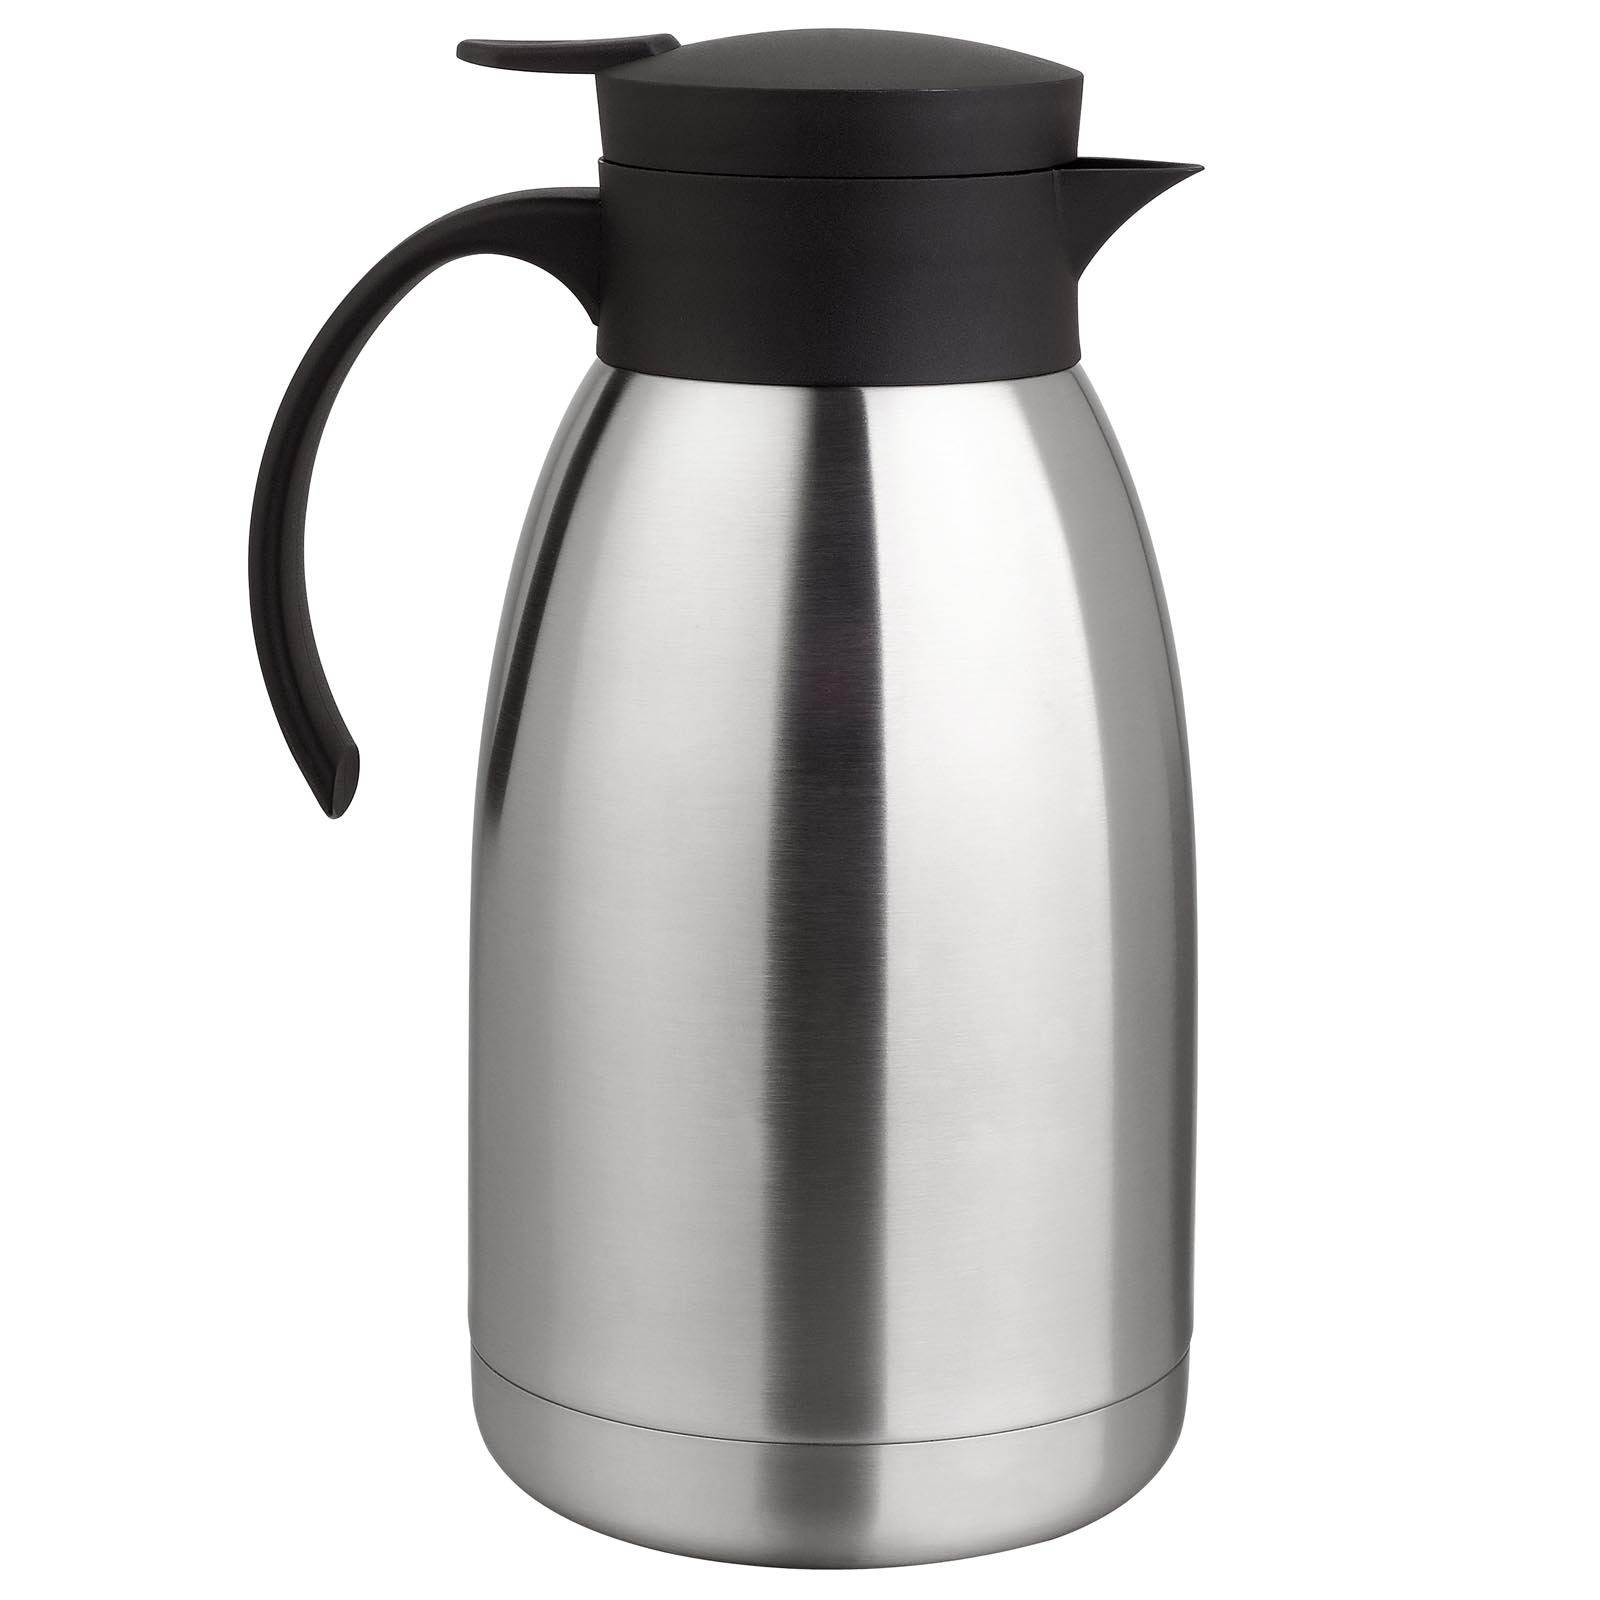 Teekanne Kaffee 2 Isolierkanne Thermo l, HAC24 Edelstahl, Thermoskanne Einhandautomatik Kaffeekanne Kanne, Tee